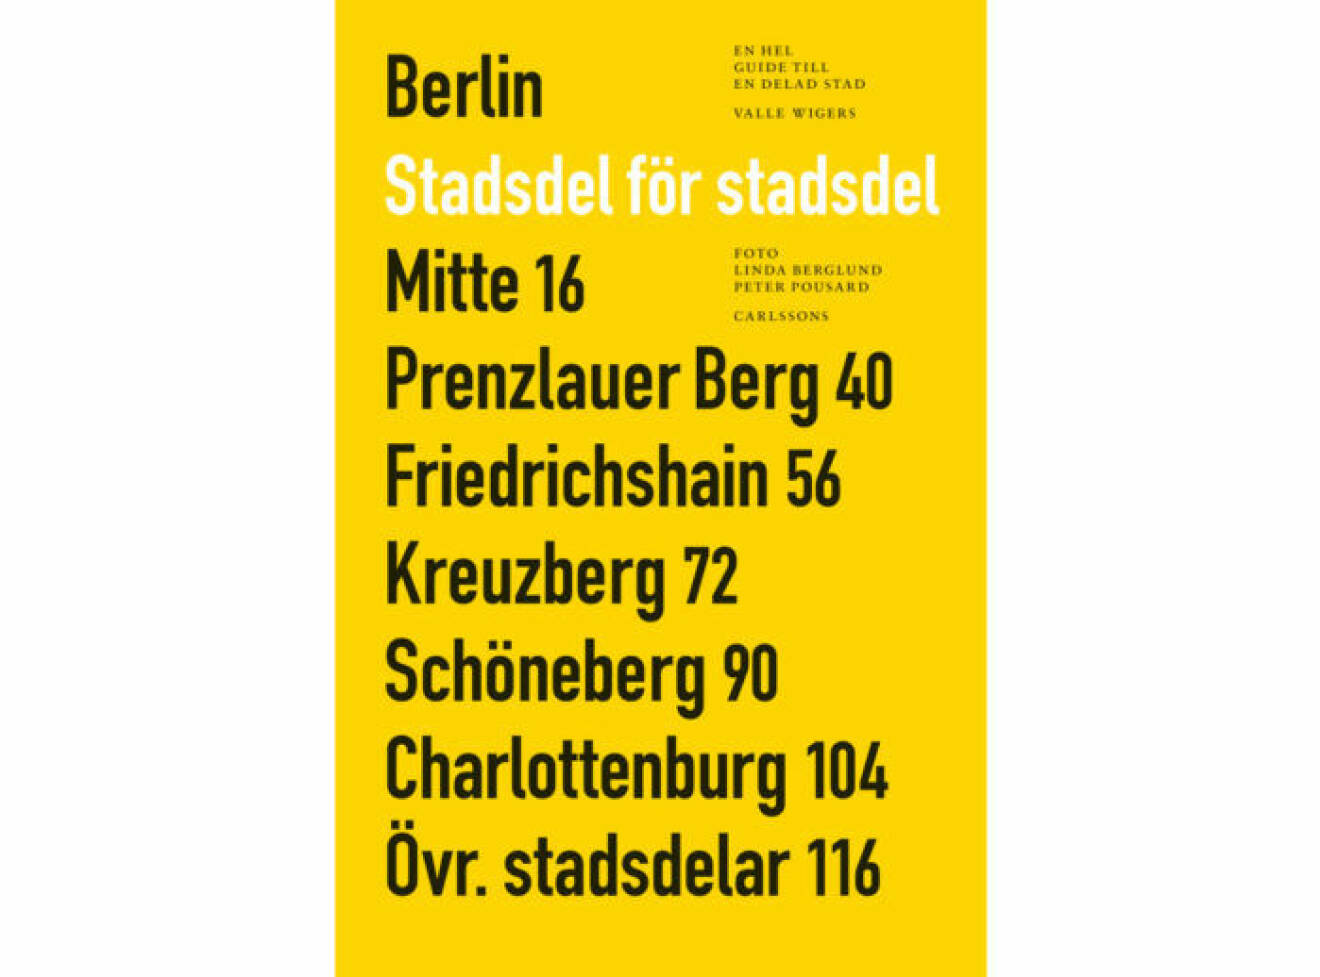 Omslag boken Berlin, stadsdel för stadsdel